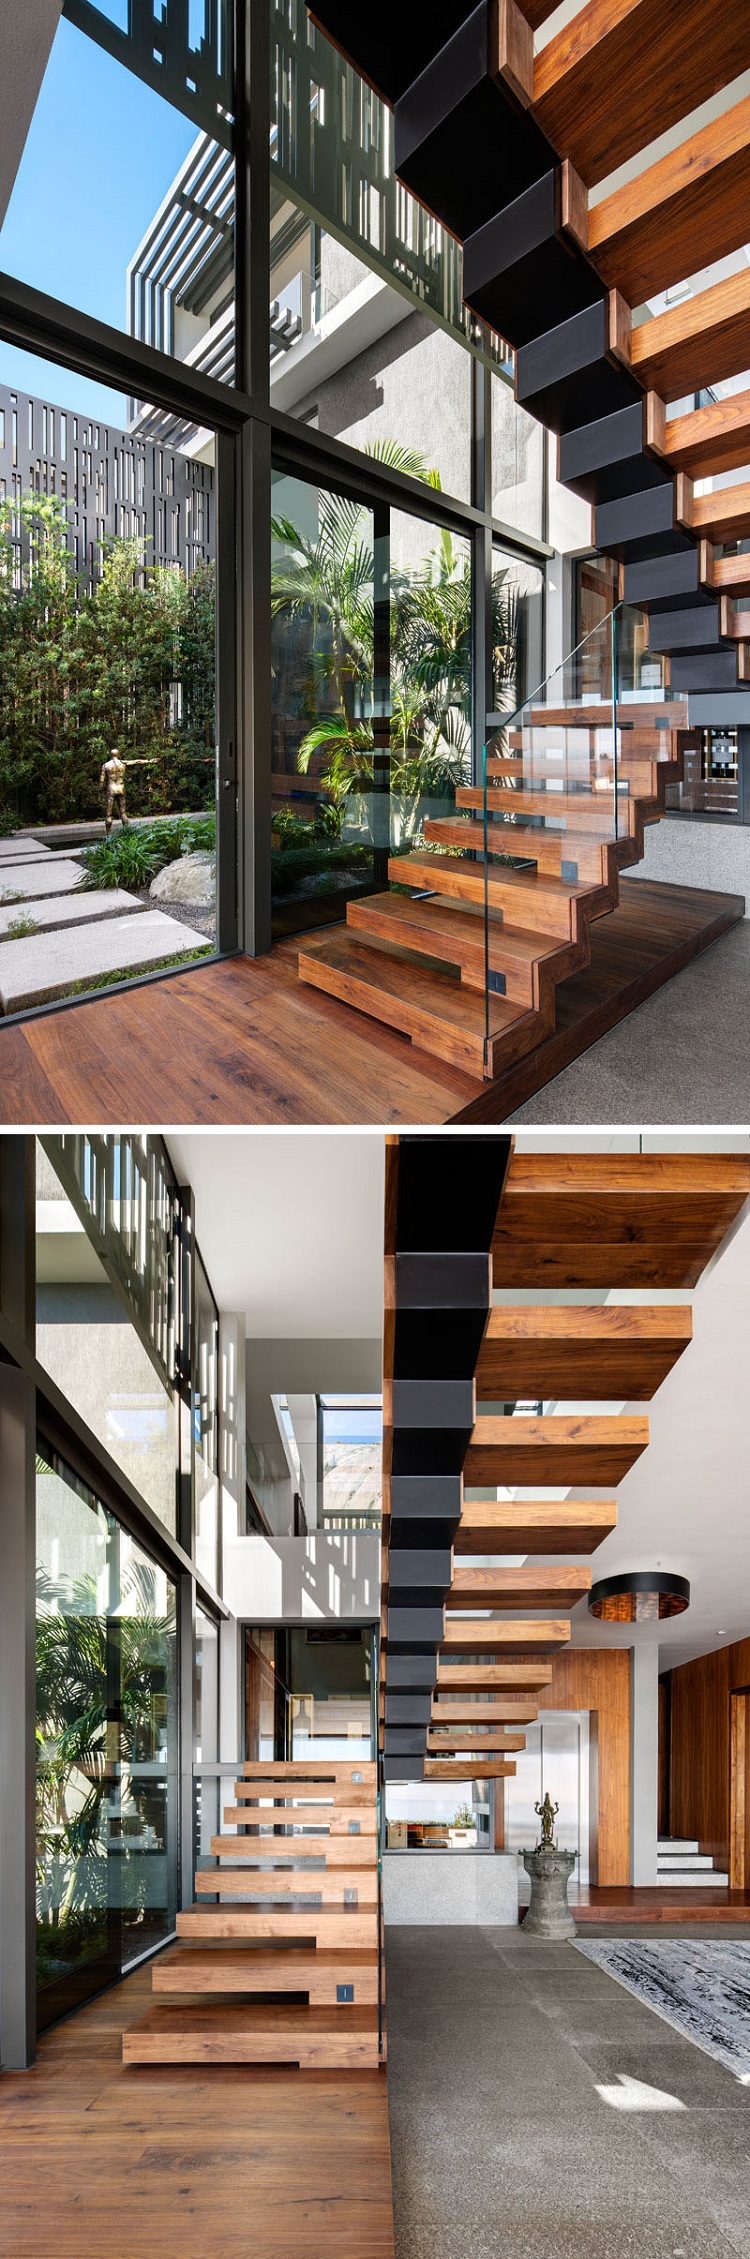 maison-de-style-escalier-en-bois-baies-vitrées-coulissantes